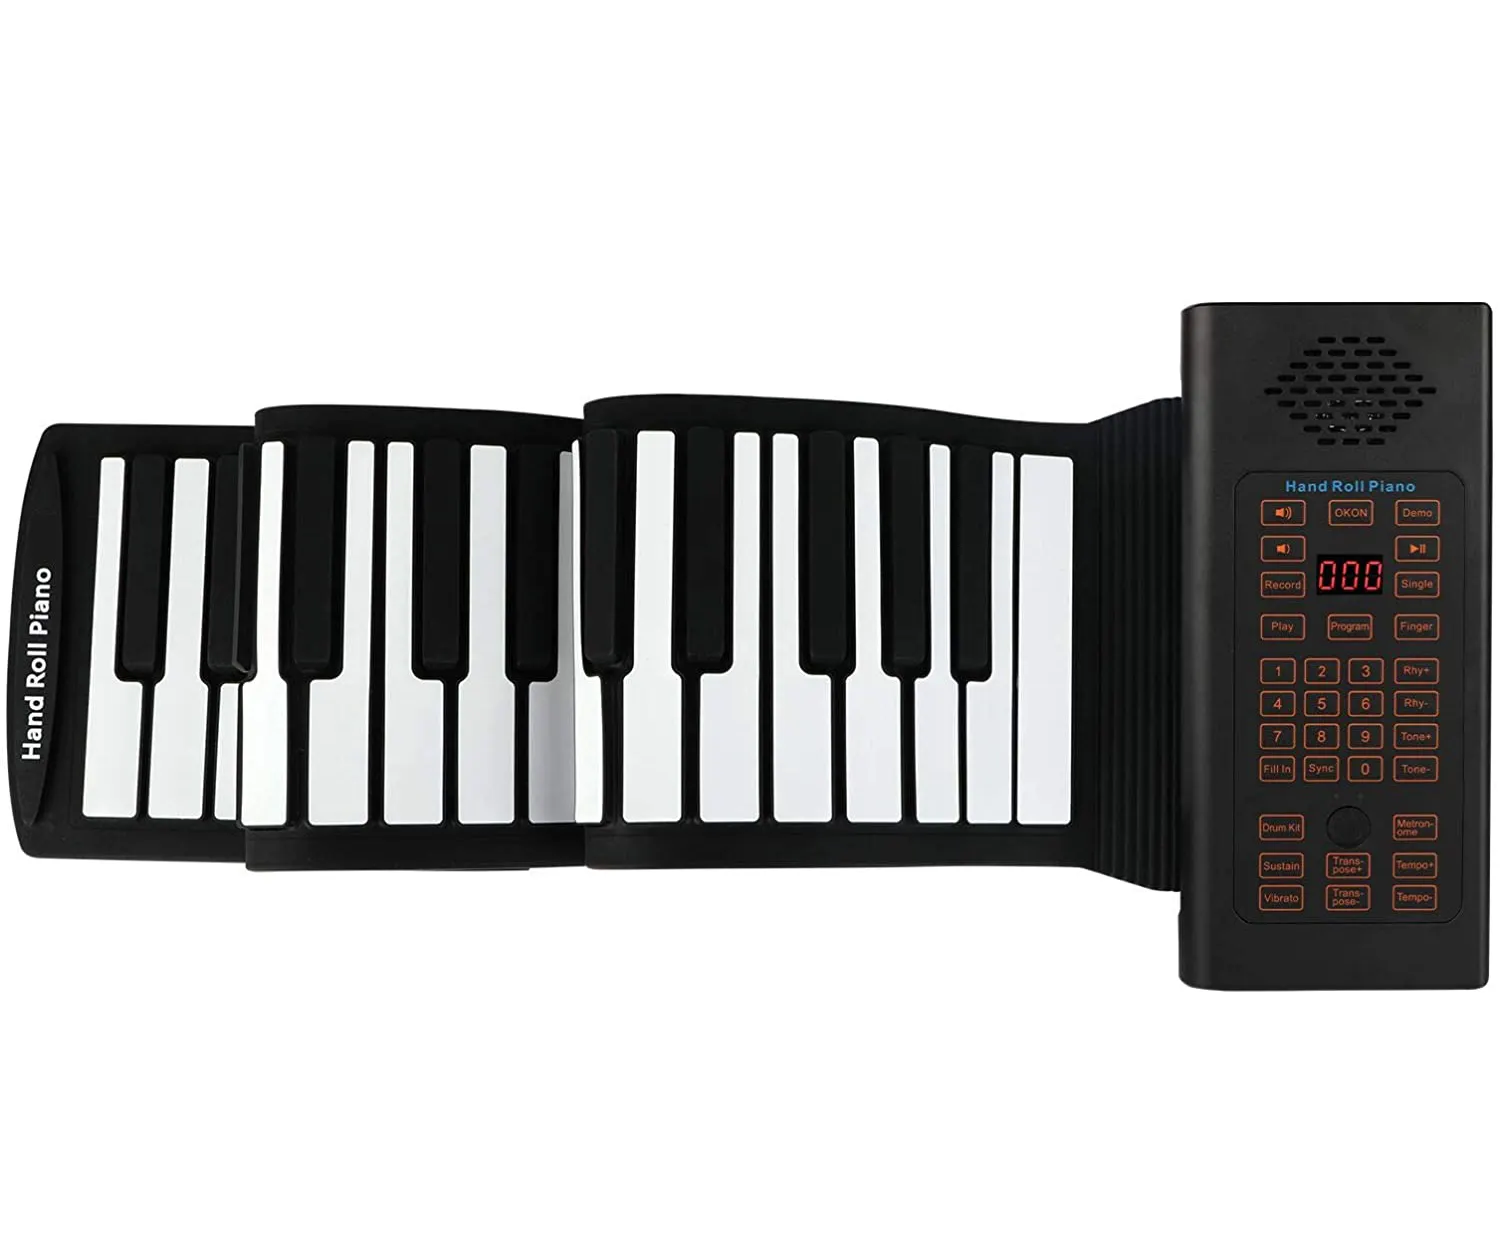 Keyboard Piano portabel 88 tombol gulung, silikon fleksibel dapat dilipat, Piano berguling tangan dengan Pedal penopang